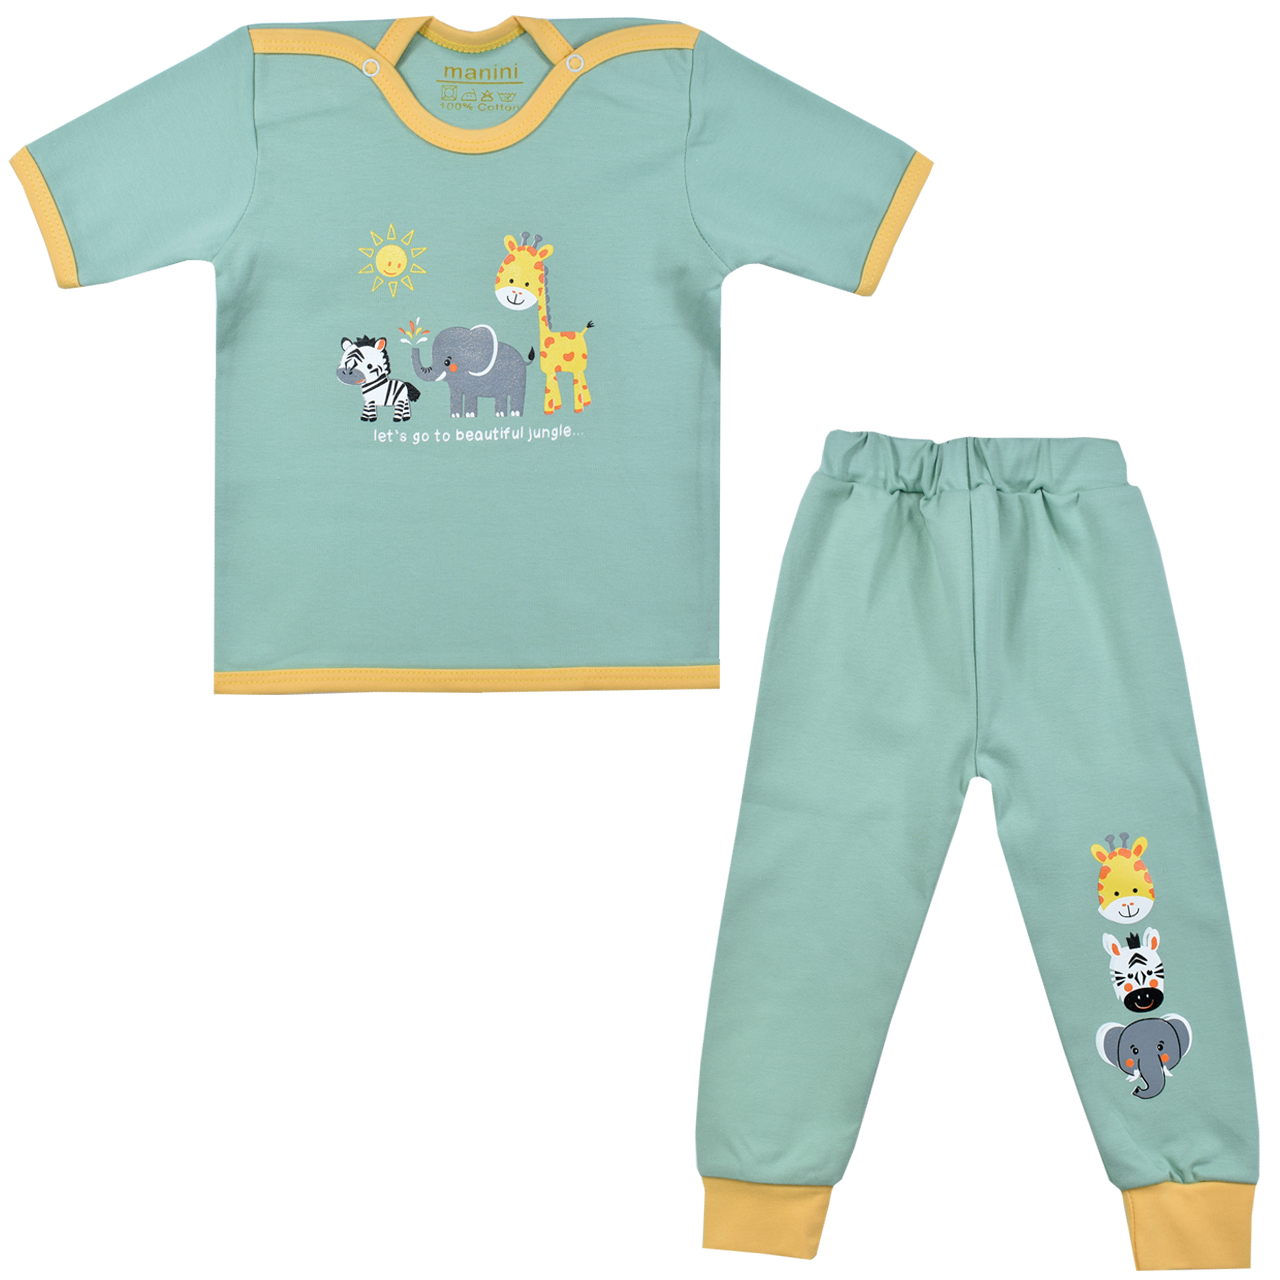 ست تی شرت و شلوار نوزادی مانینی مدل زرافه کد 1 رنگ سبز